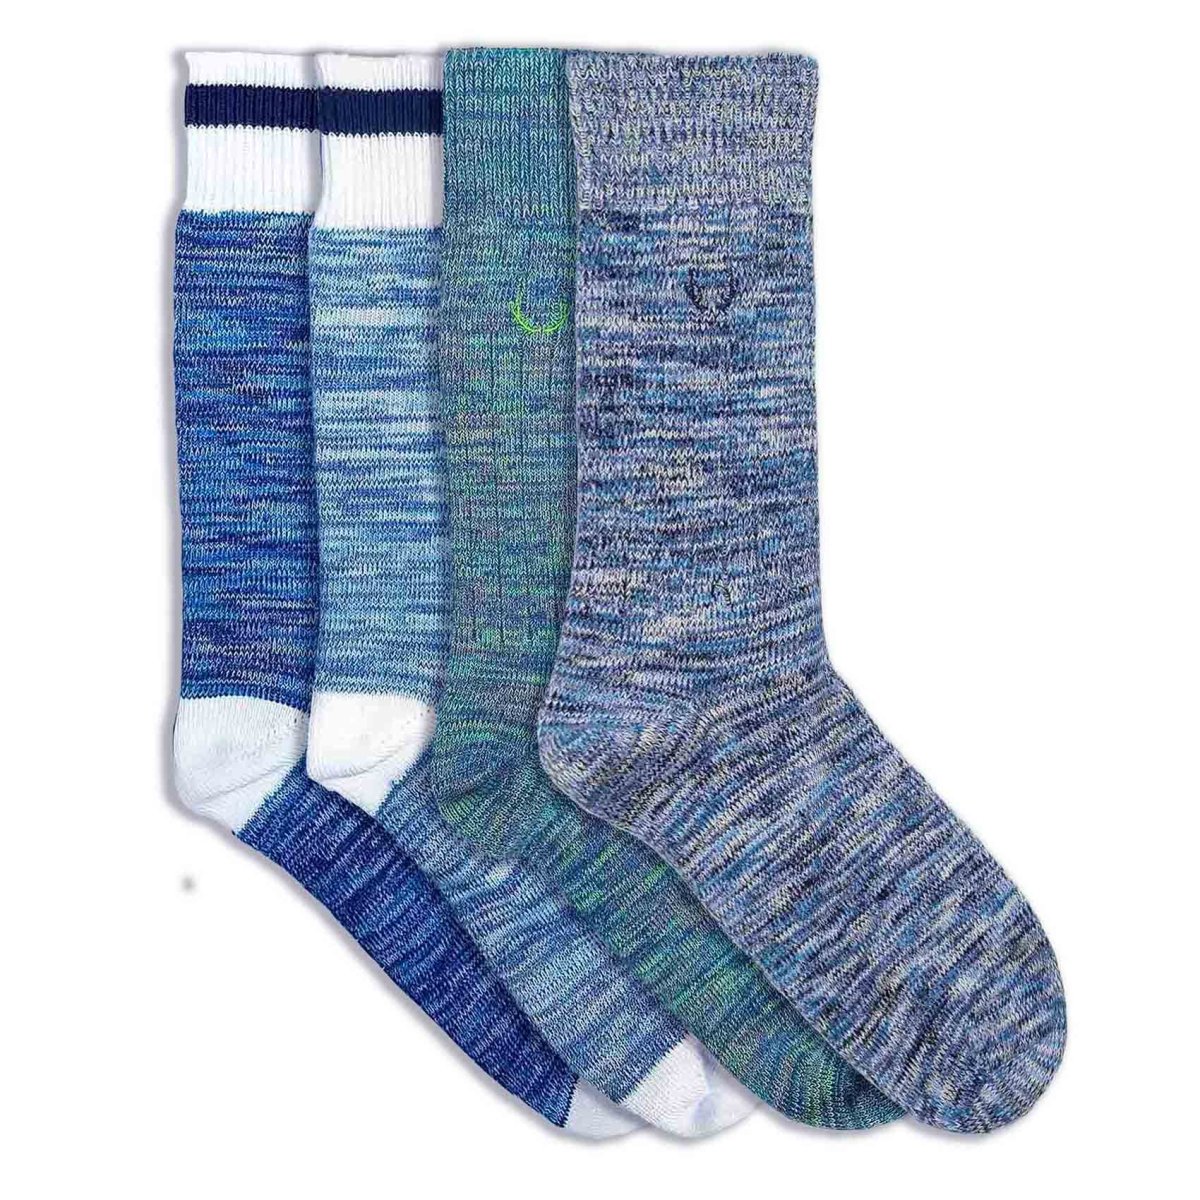 4 paires de chaussettes en coton bio chinées et marines bleues et vertes - BLUEBUCK